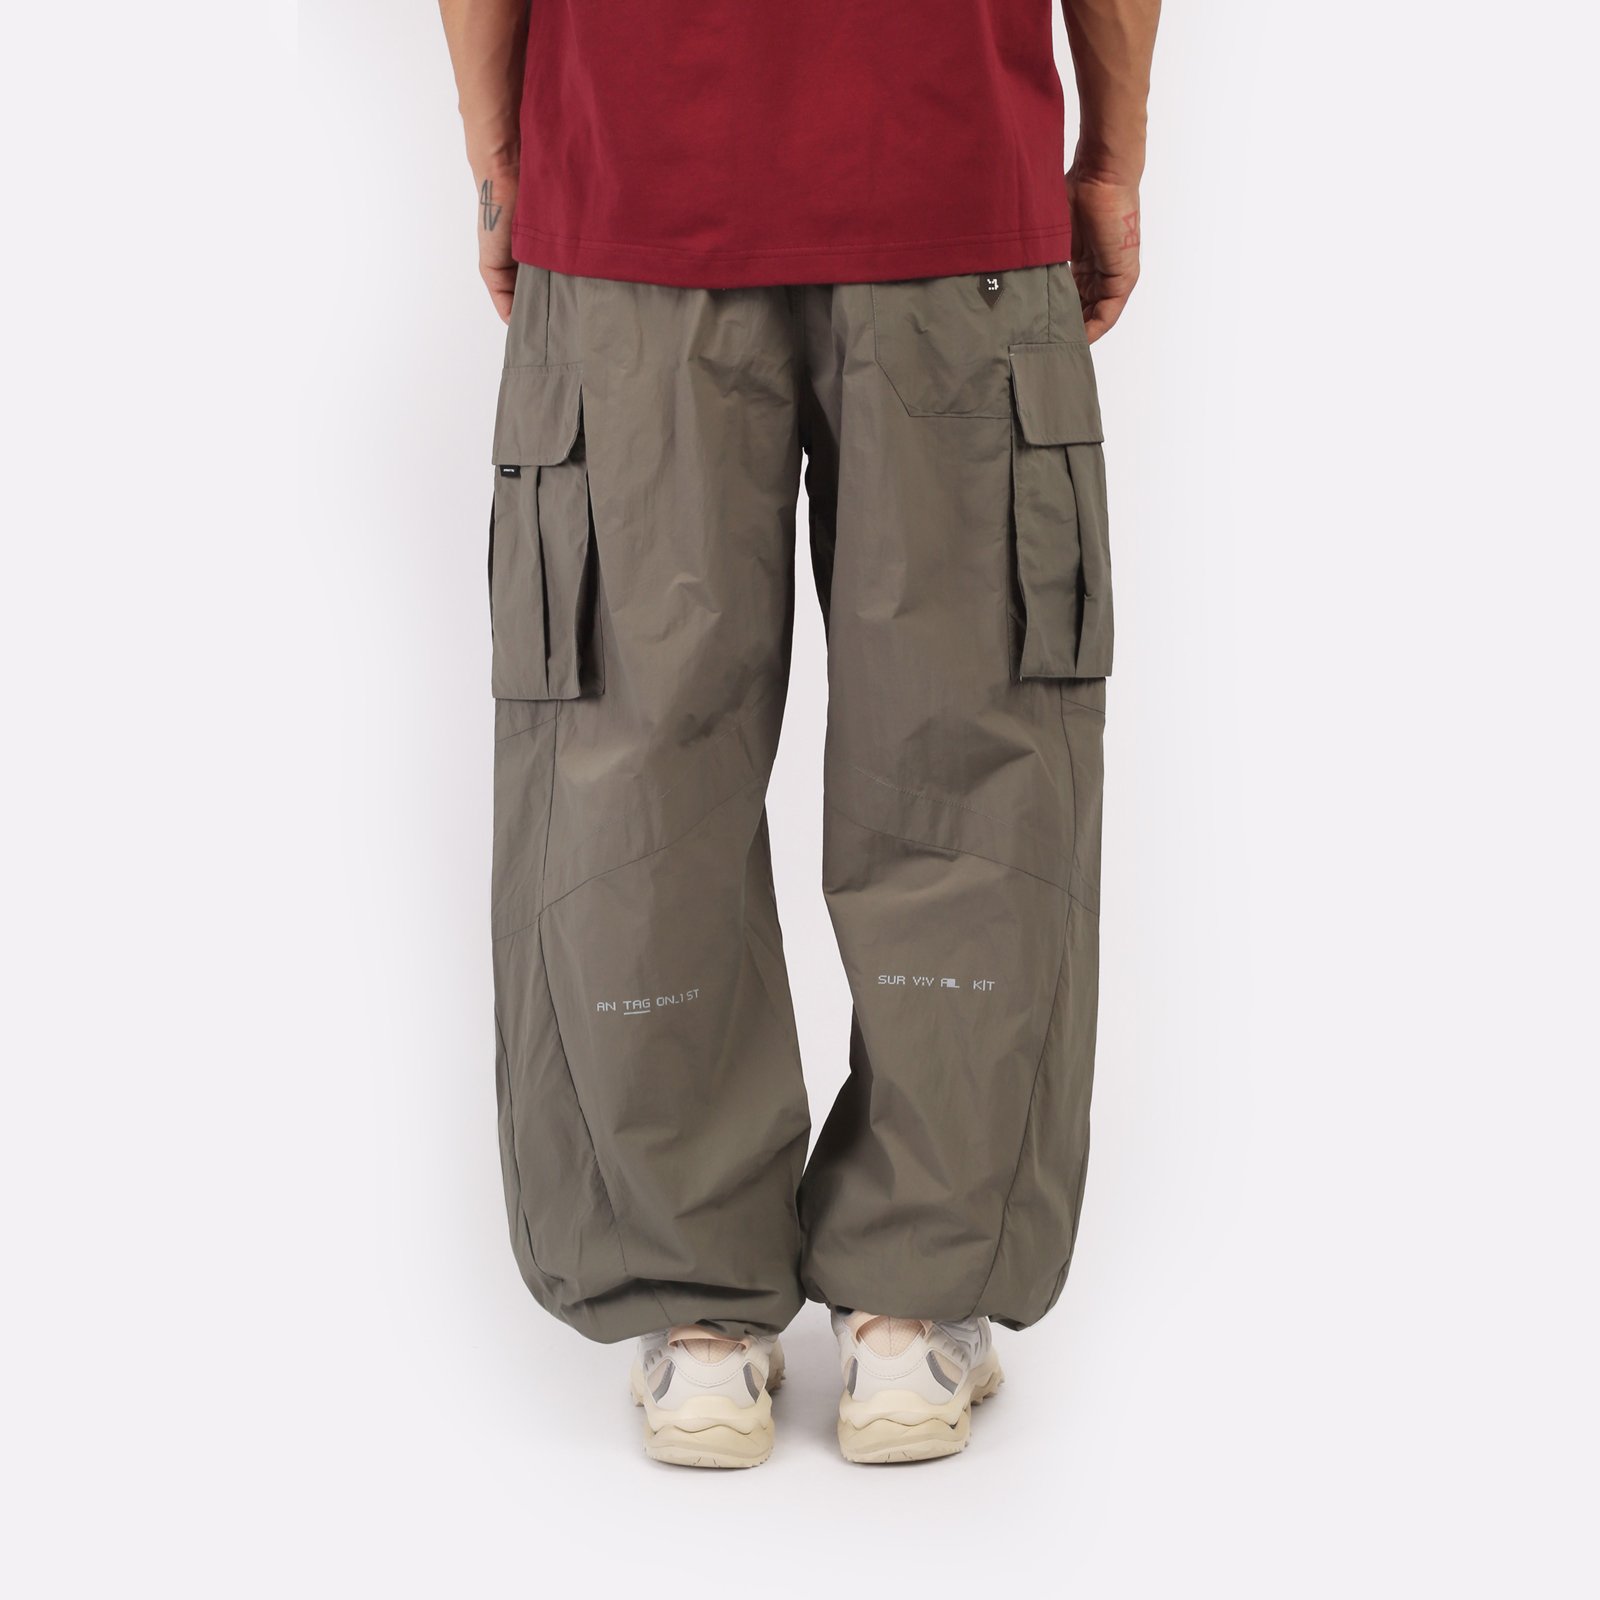 мужские брюки KRAKATAU Rm176-52  (Rm176-52-елово-сер)  - цена, описание, фото 2